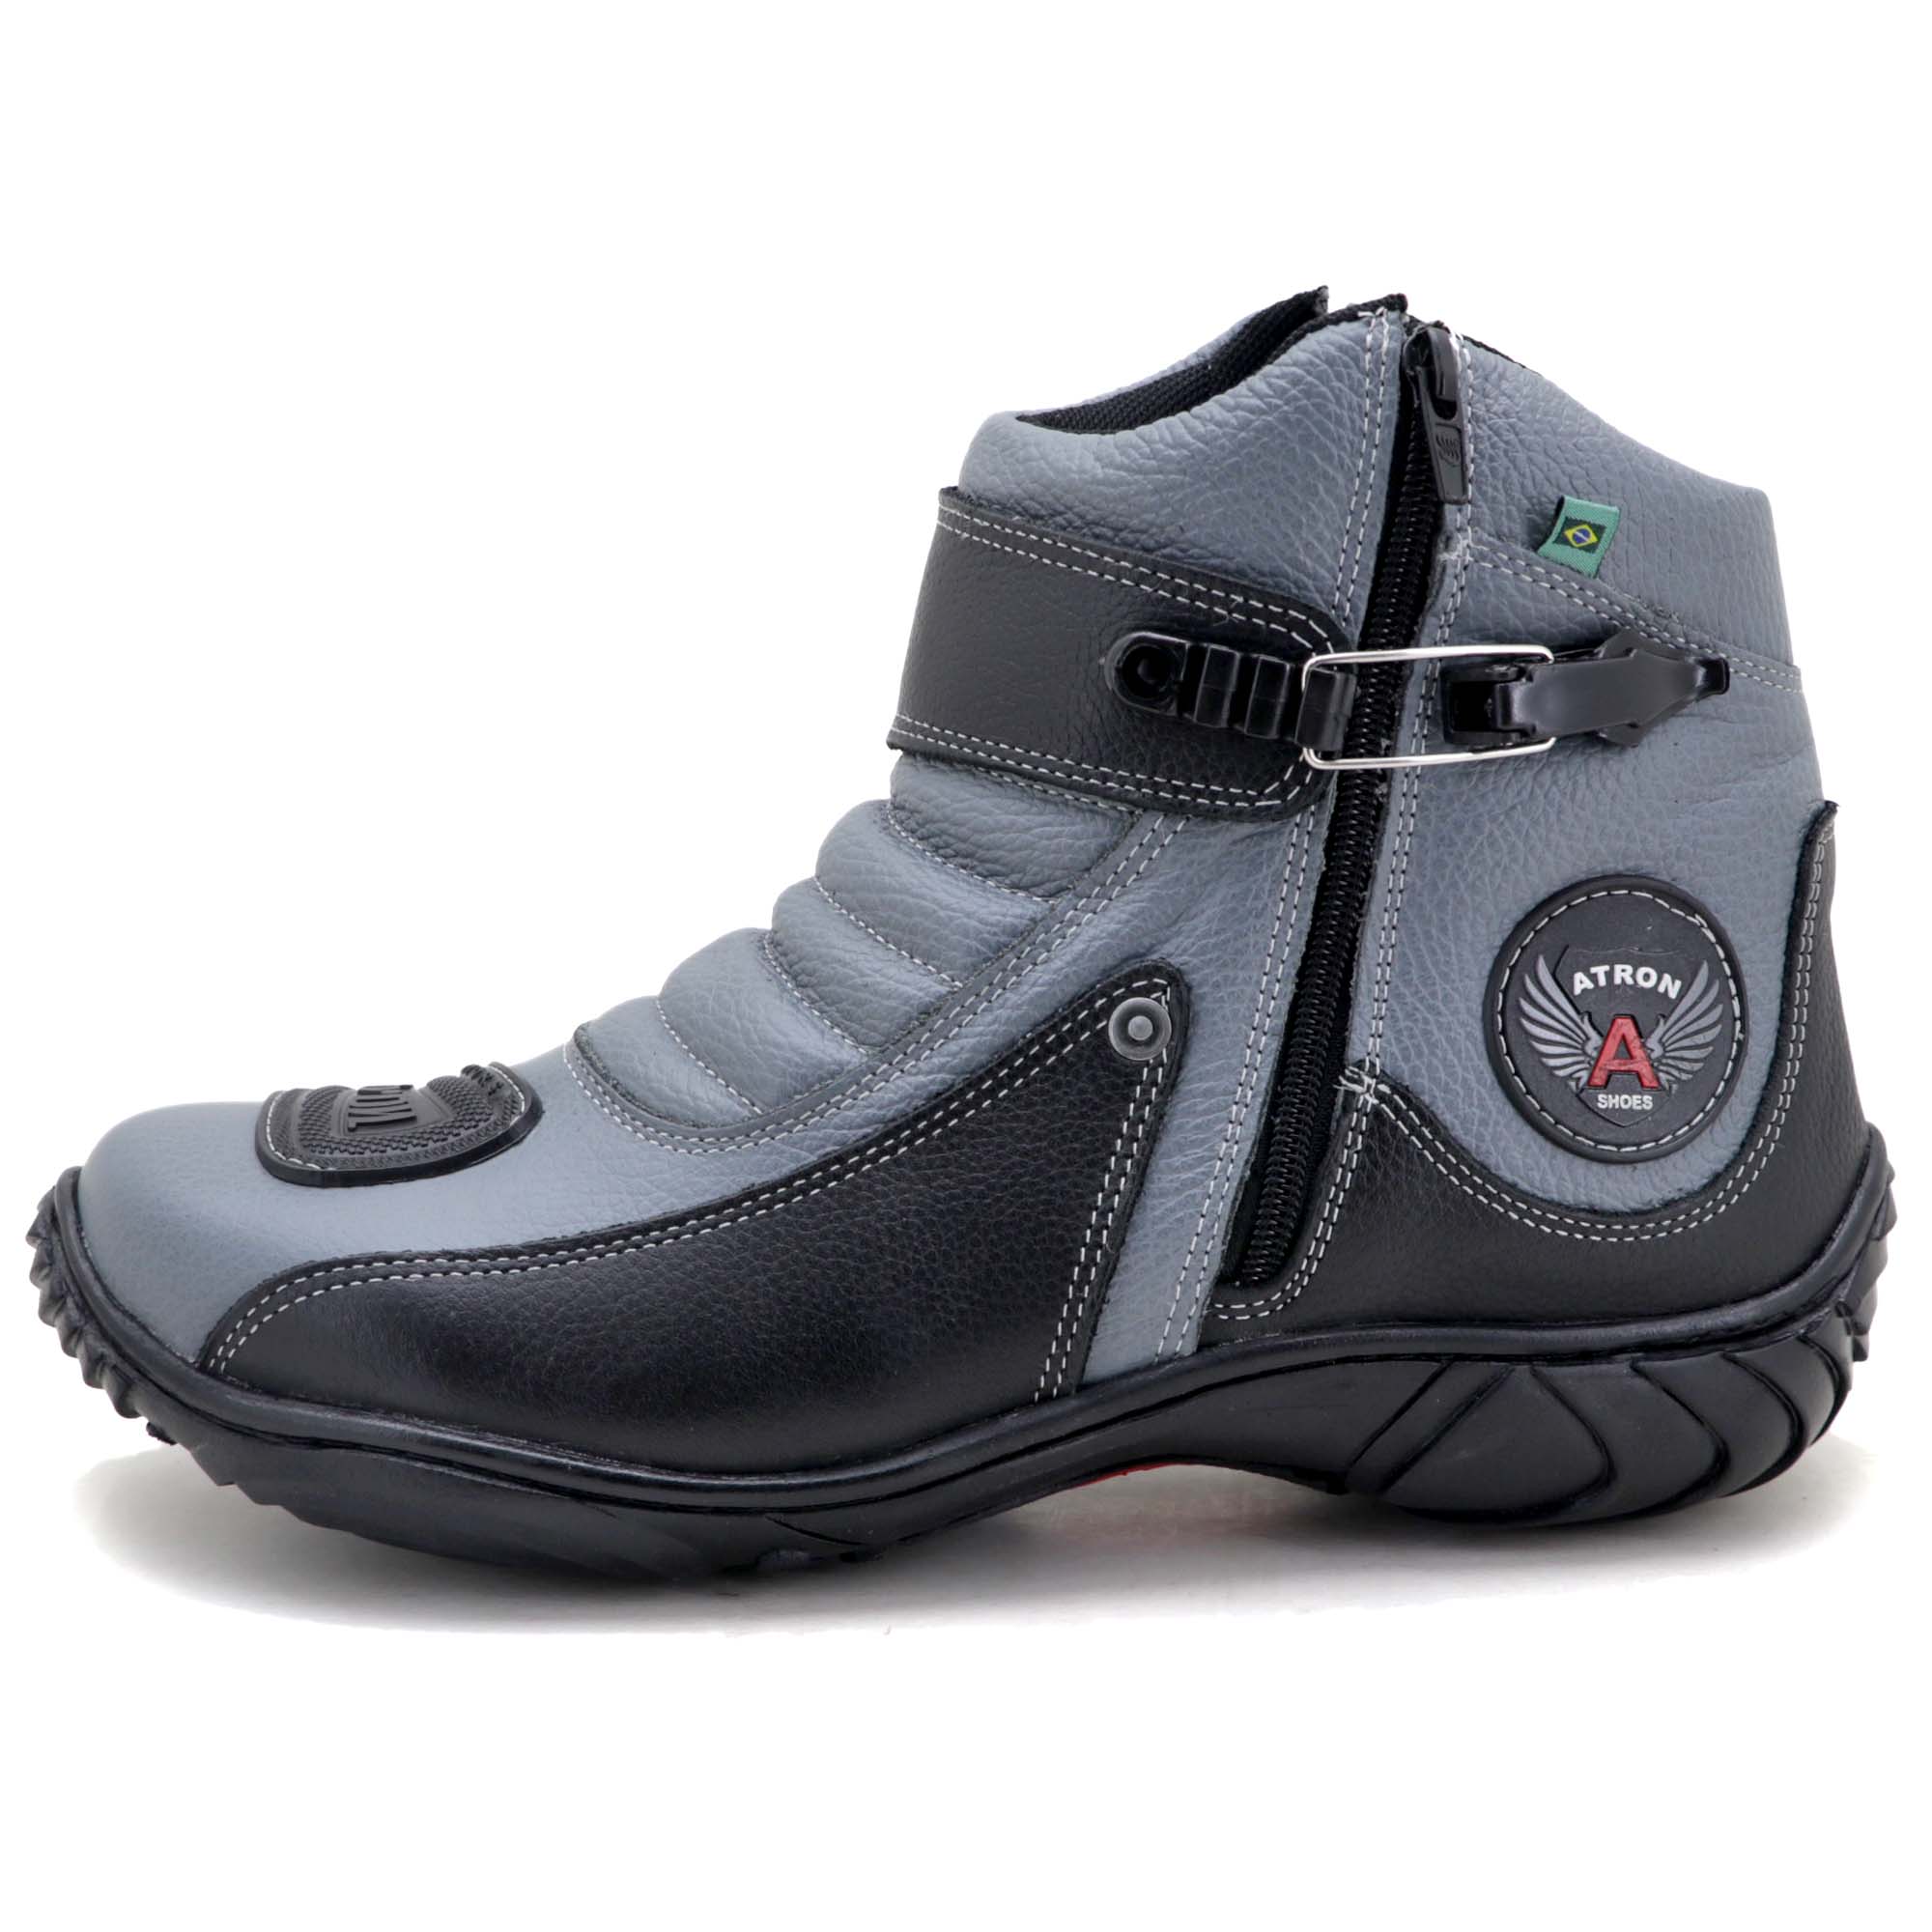 Bota motociclista Atron Shoes em couro legítimo 271 personalizado cinza e preto